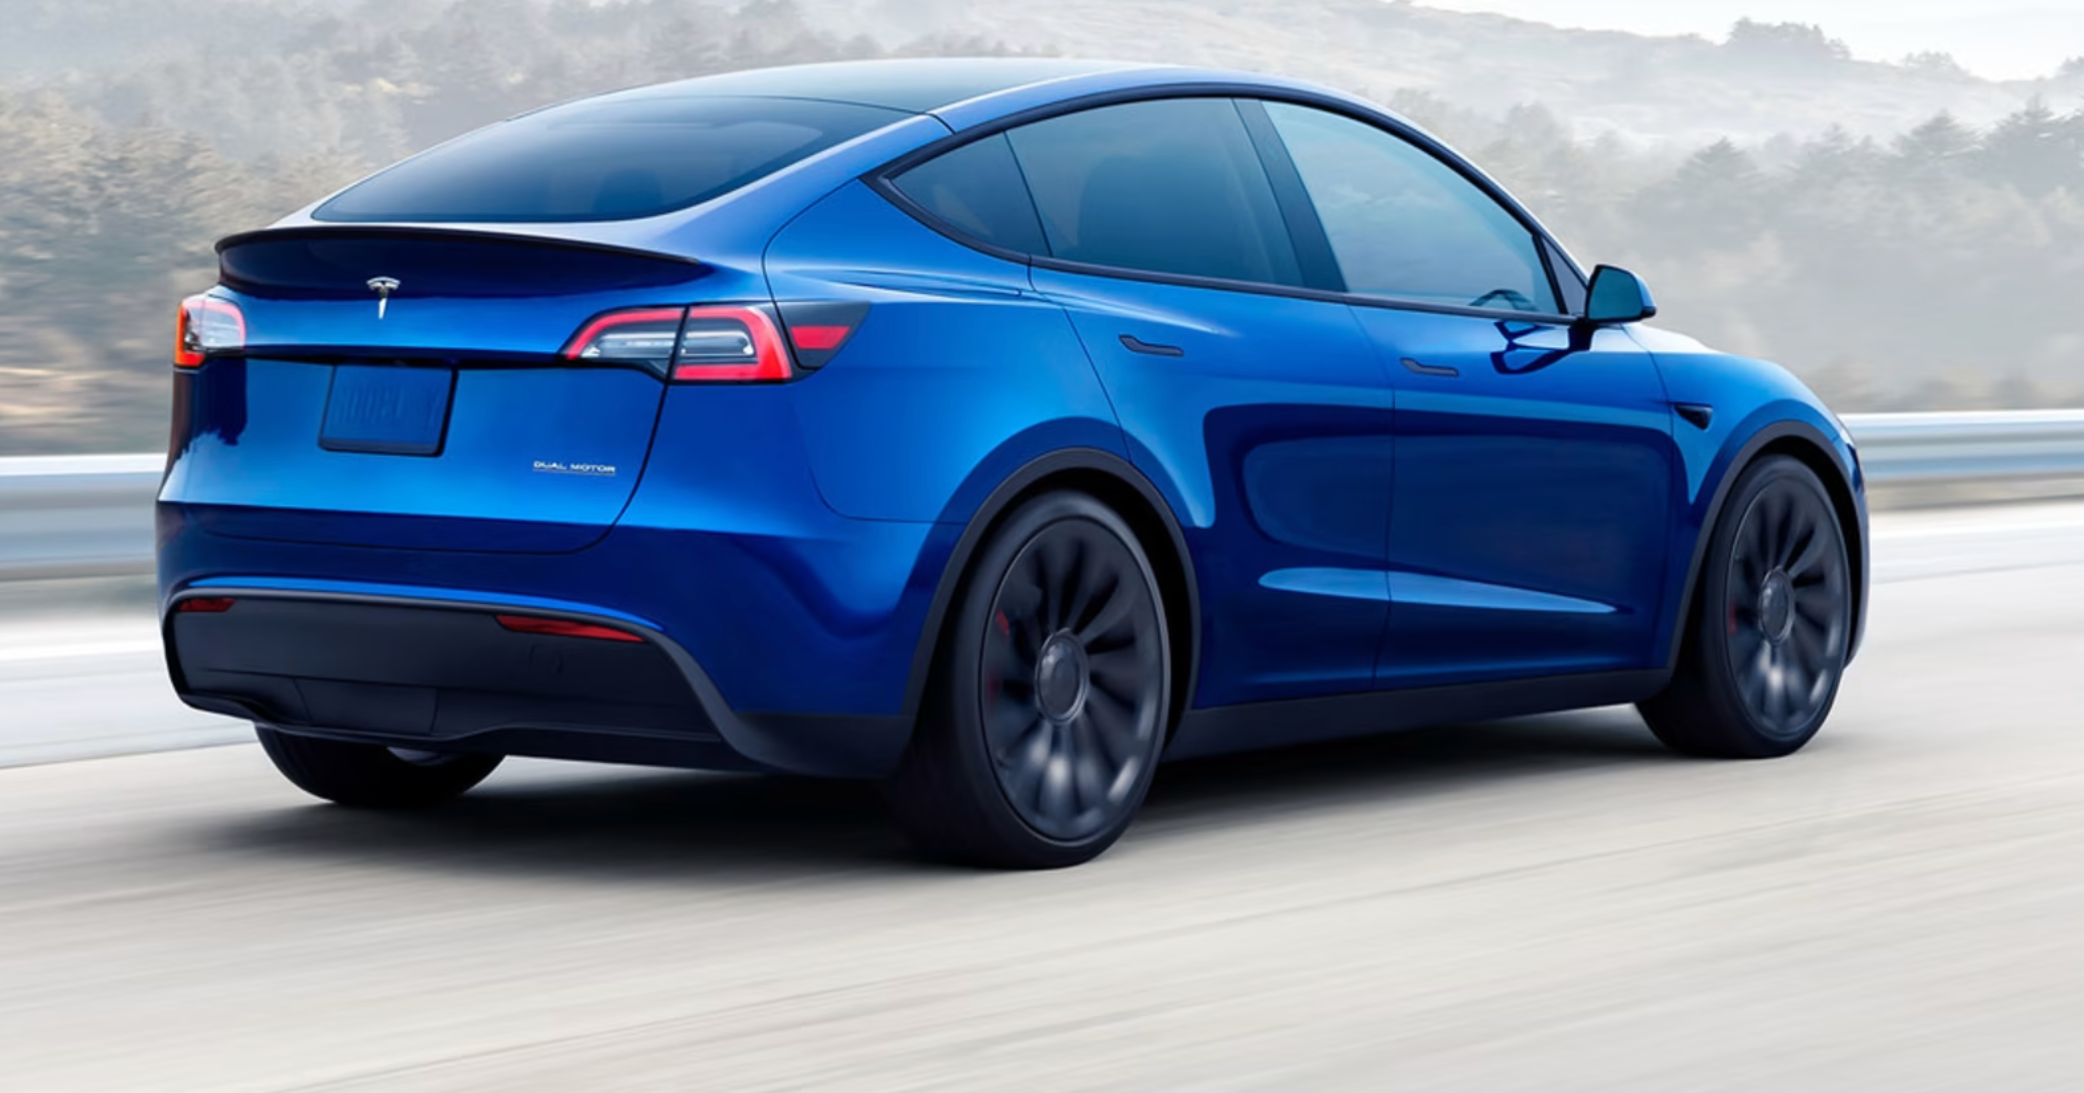 Kan miste ratt-kontrollen, nå undersøkes Tesla Model 3 og Y - ITavisen